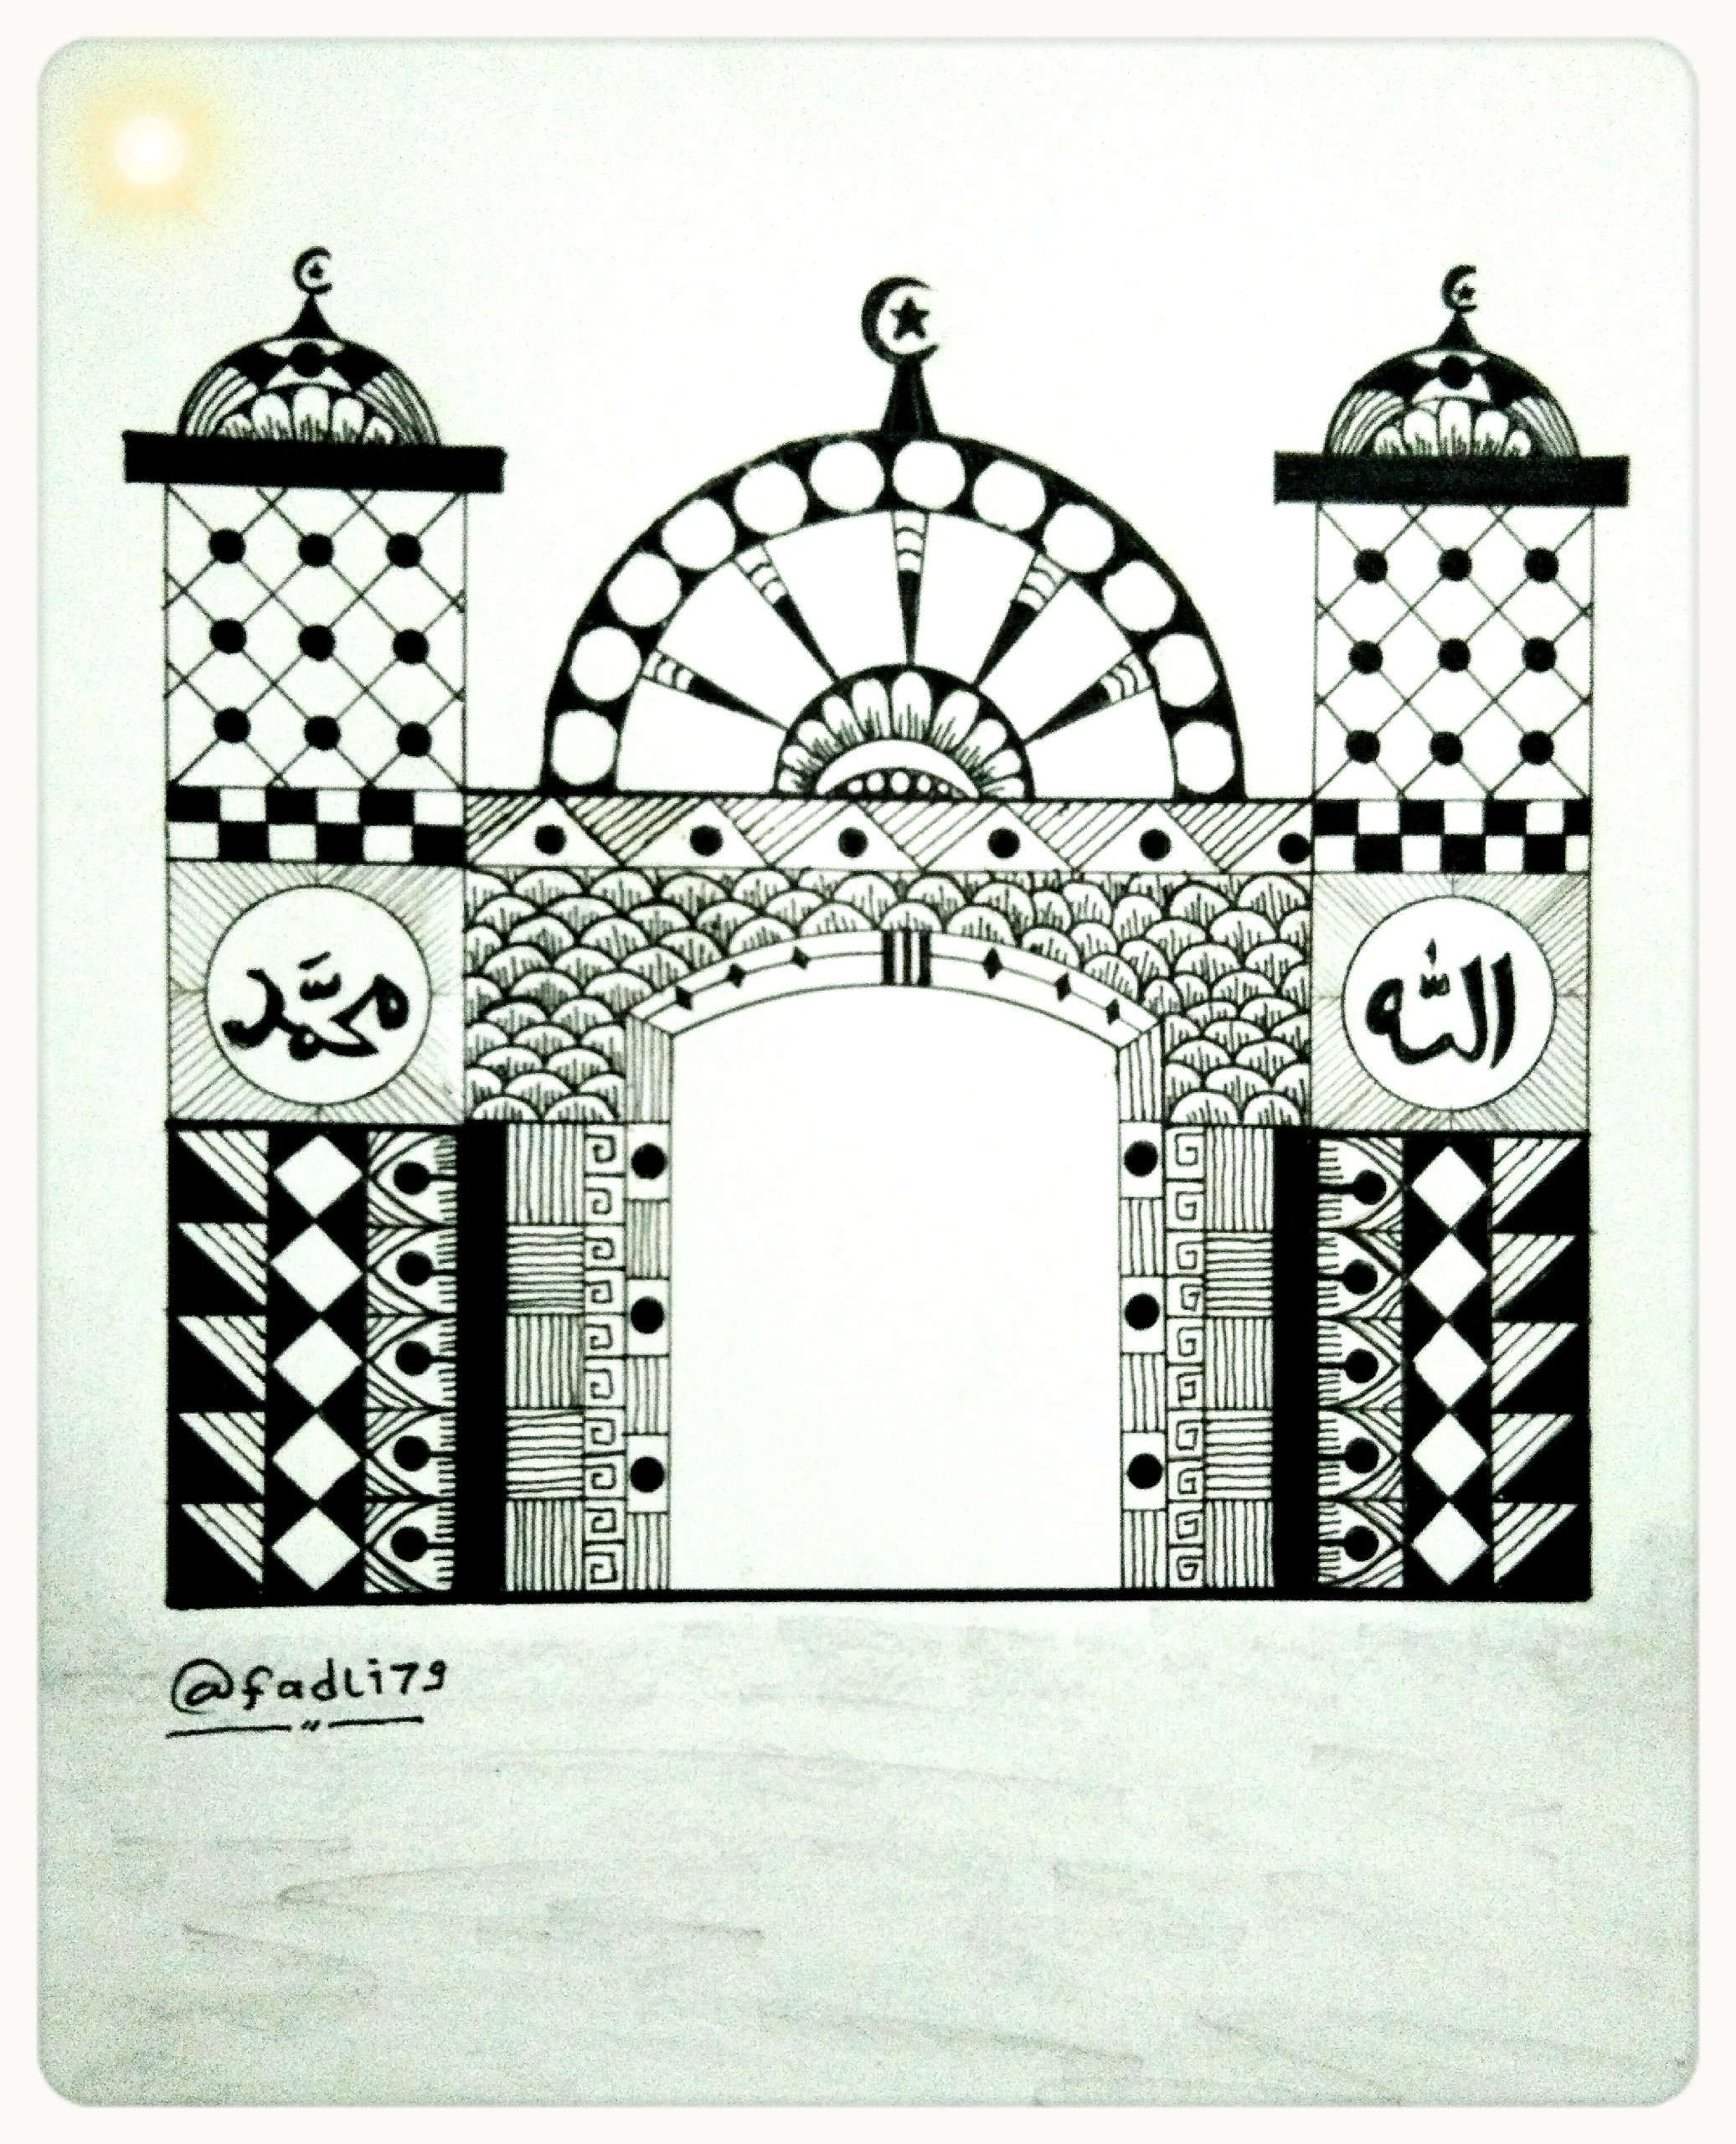 Gambar Ilustrasi Masjid Iluszi